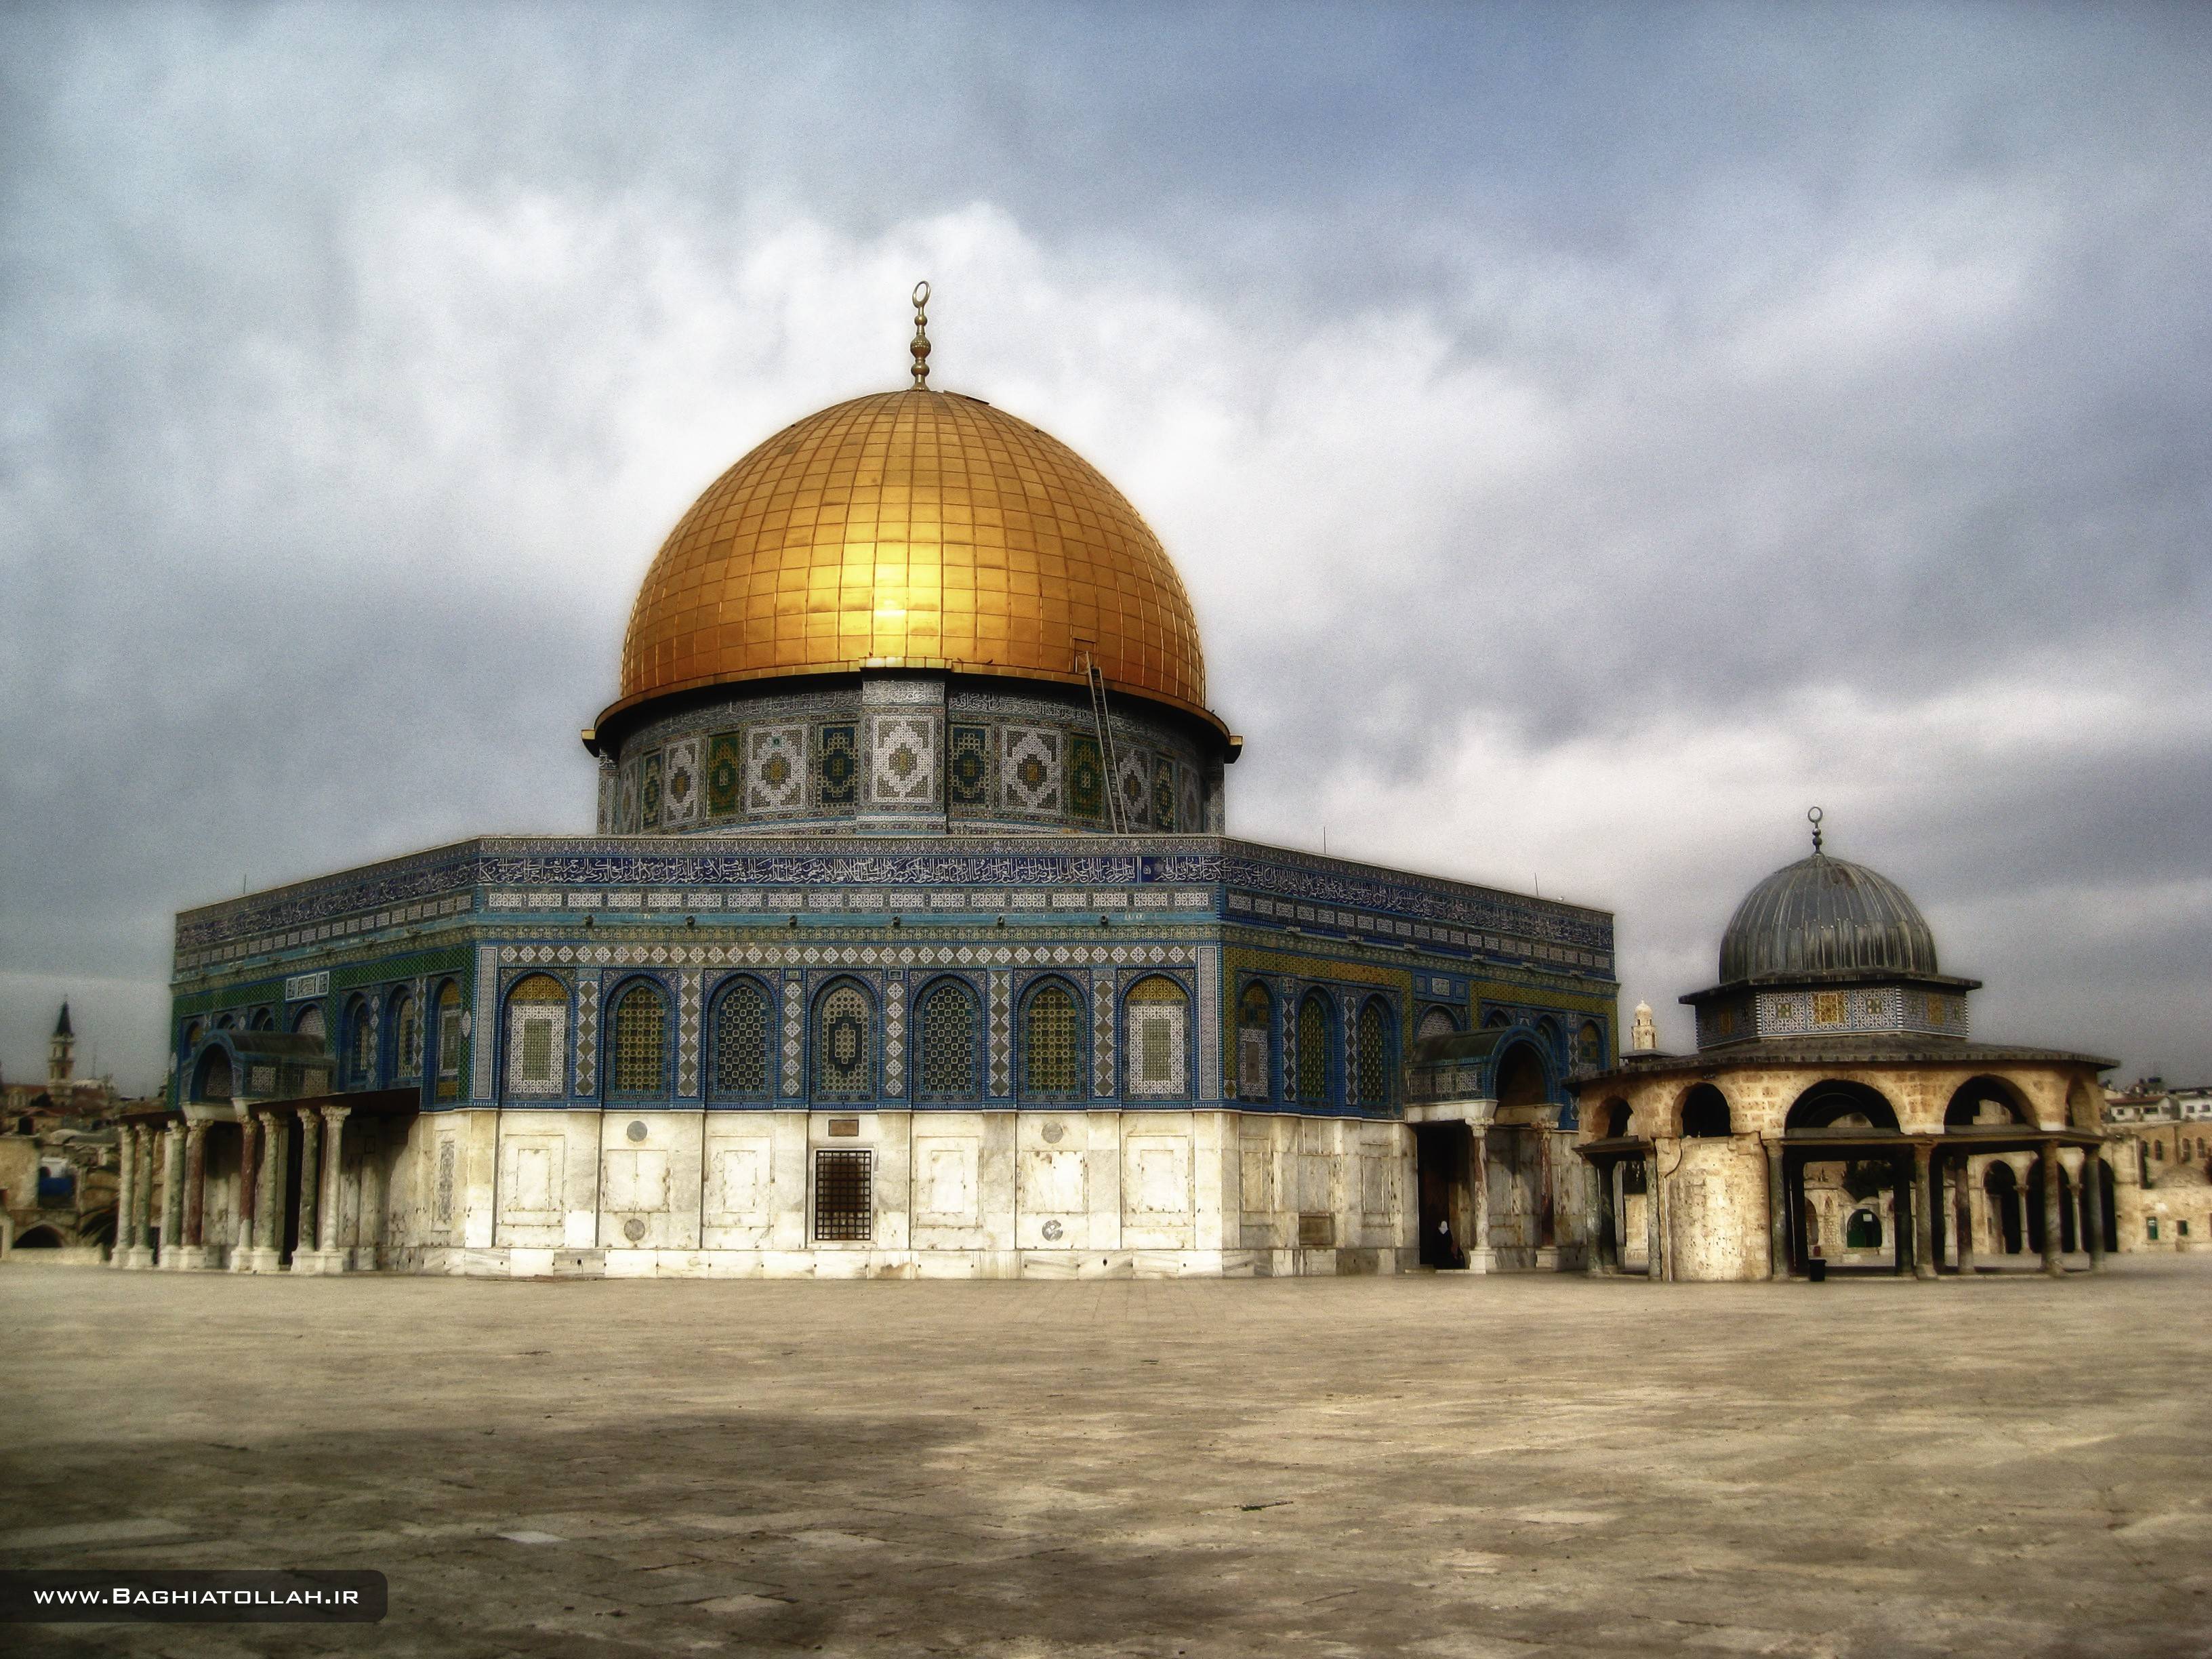 Tags Islam Israel Jerusalem Religion